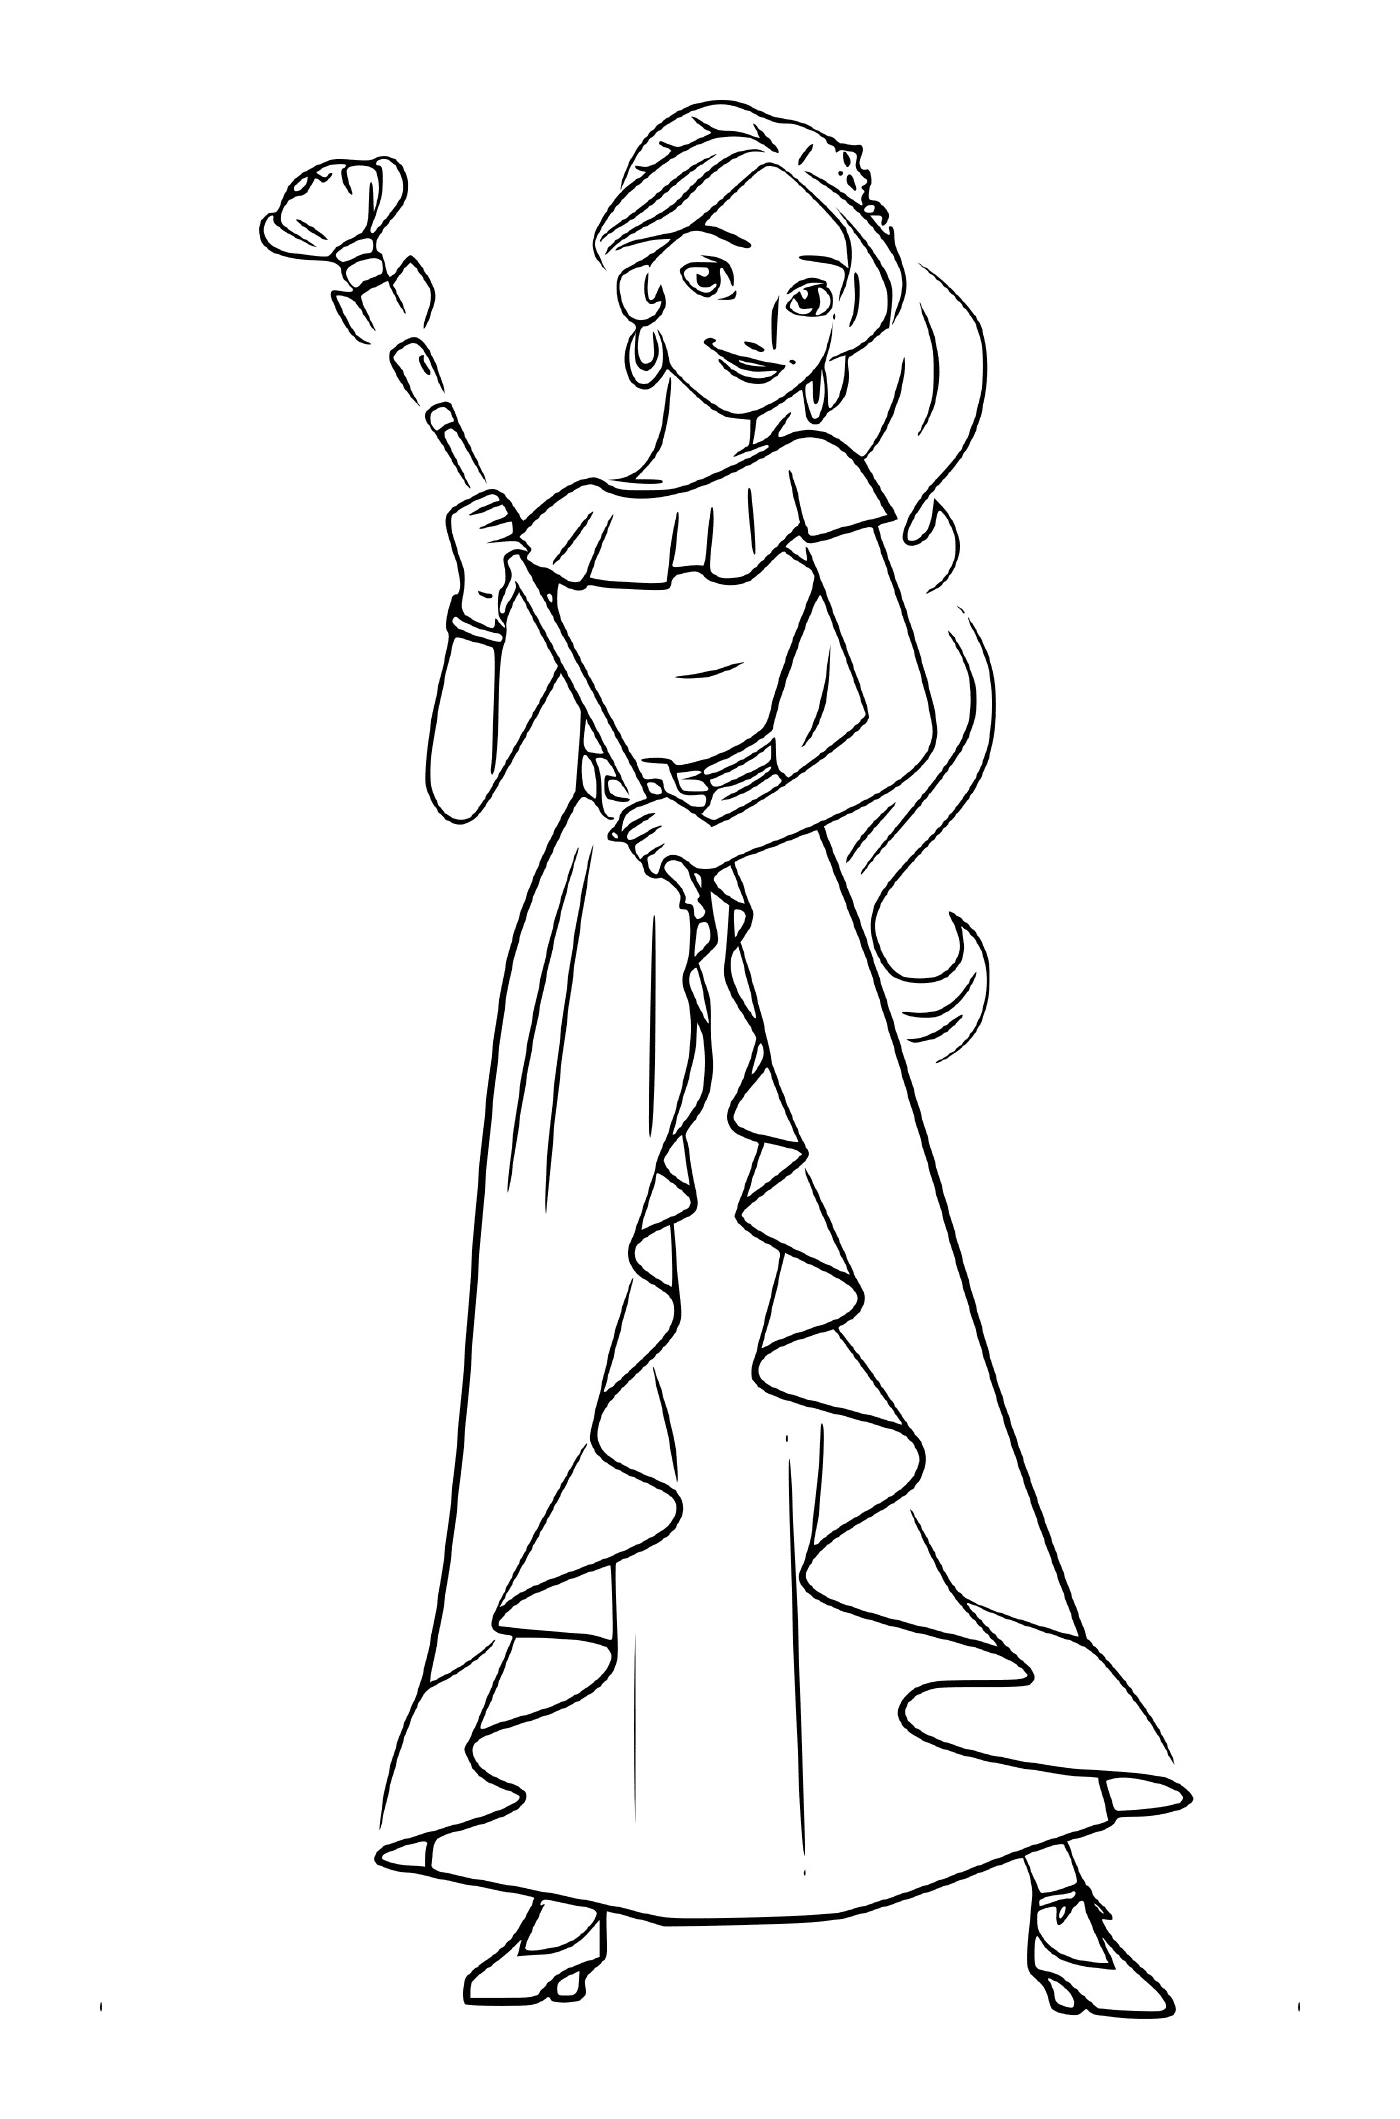  Elena, a Disney princess 